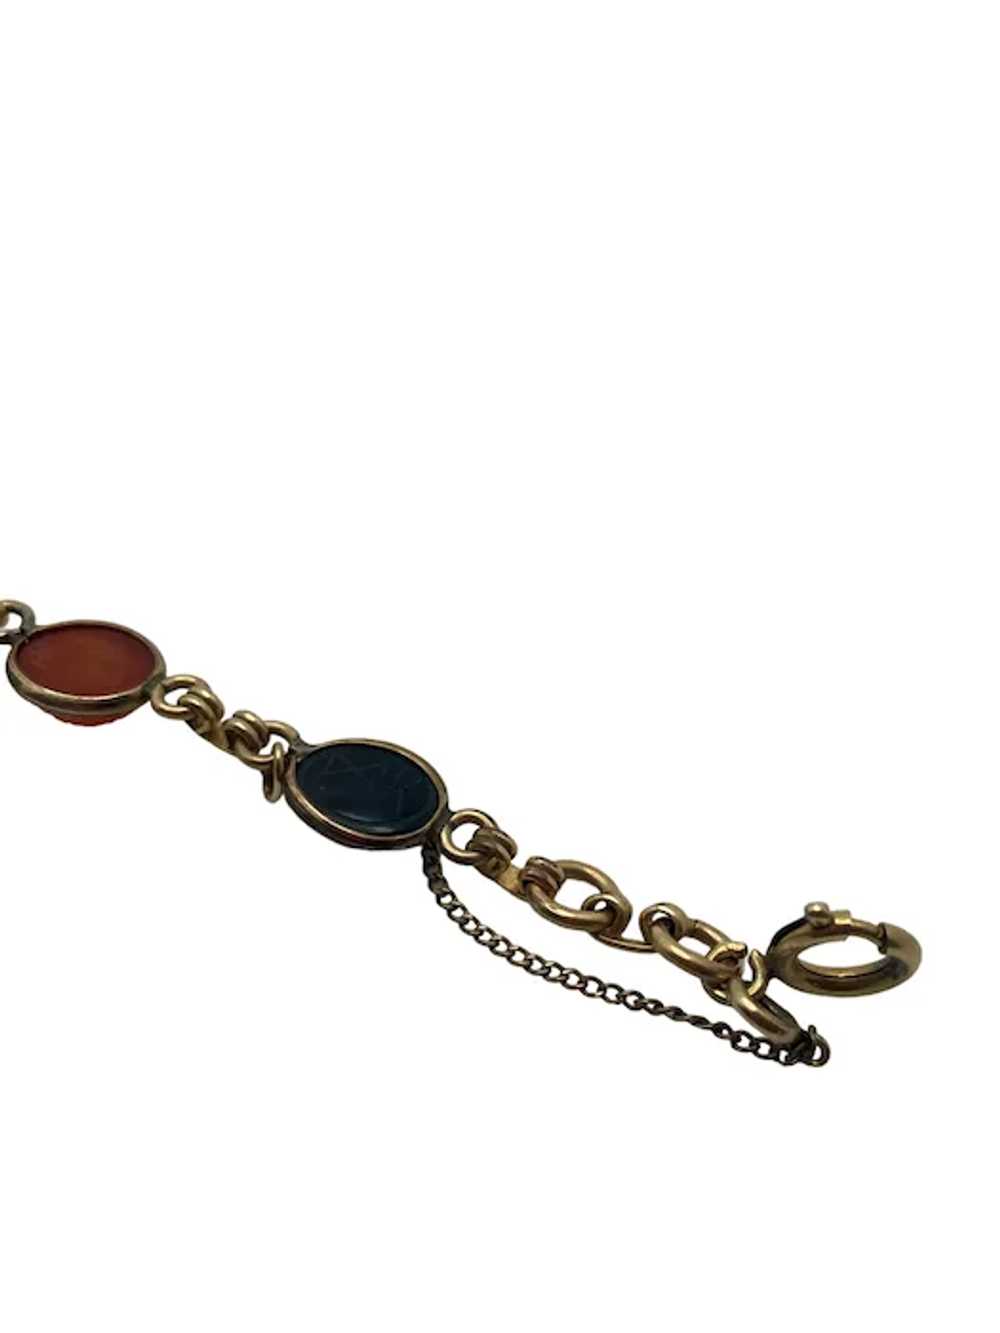 Vintage 12k Gold Filled Scarab Bracelet - image 9